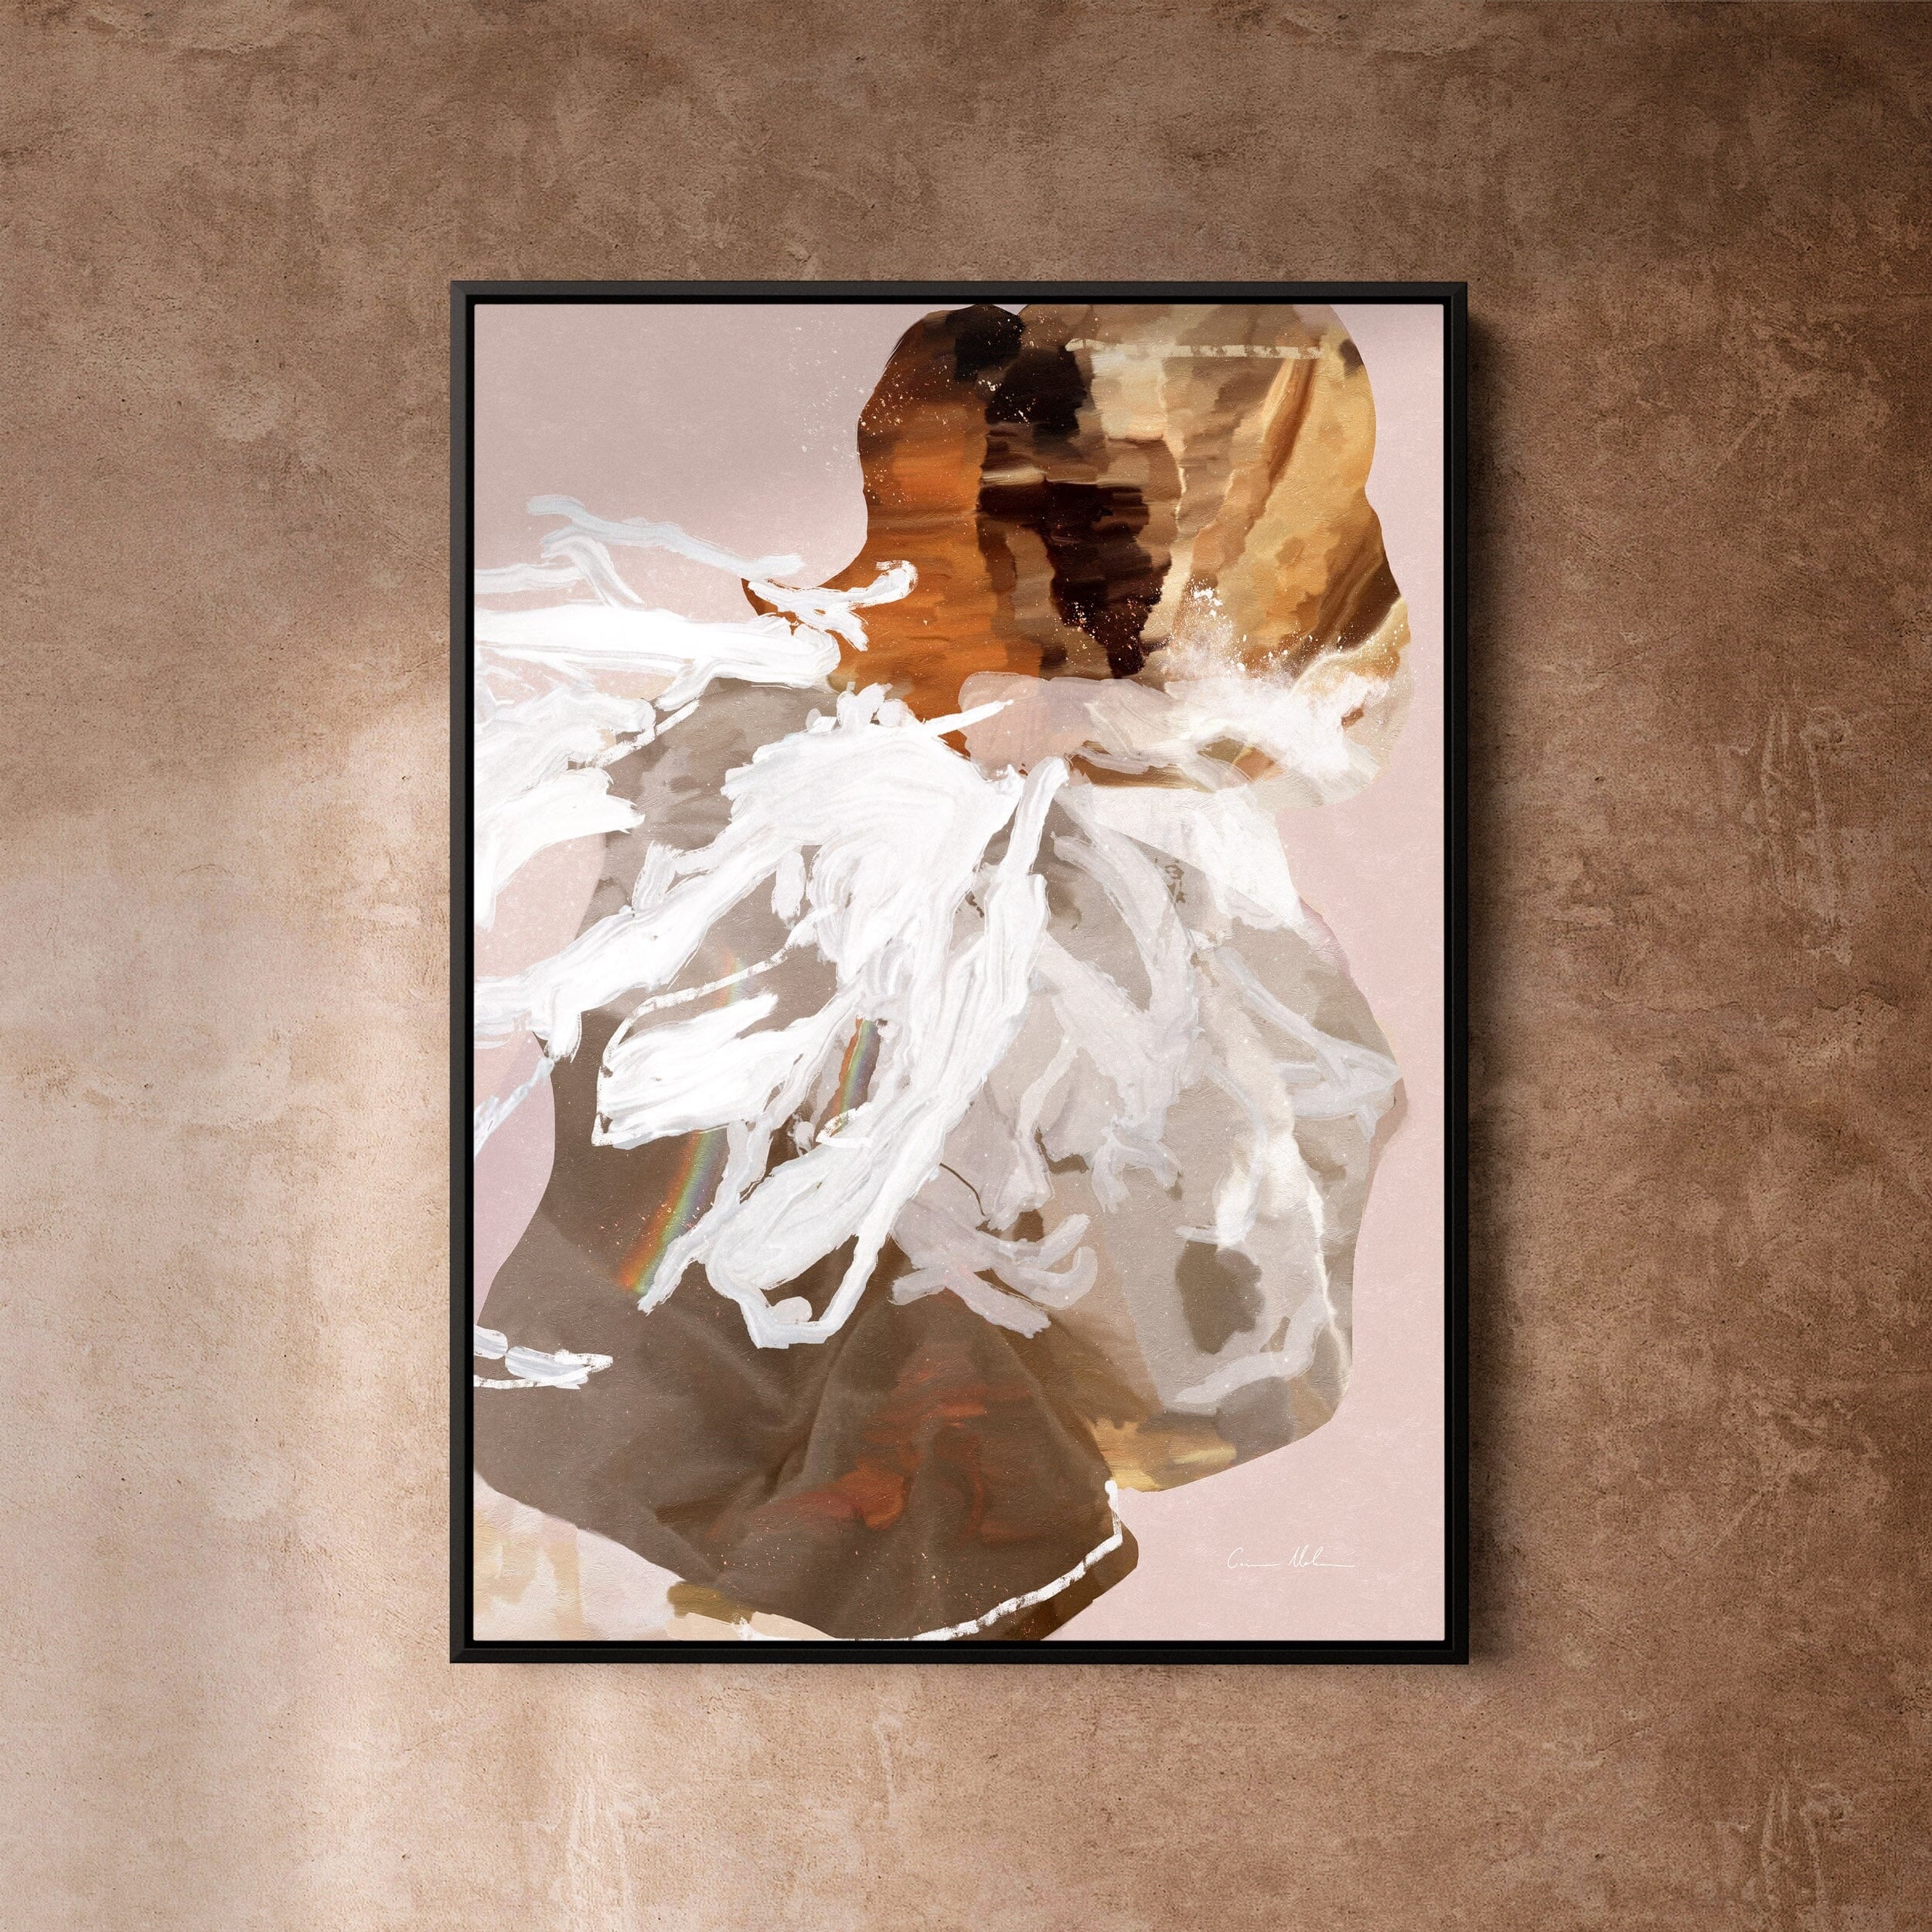 "Kununurra II" on Canvas - Portrait Canvas Wall Art Corinne Melanie Art Professionally Framed - Black 24x32in / 60x80cm 